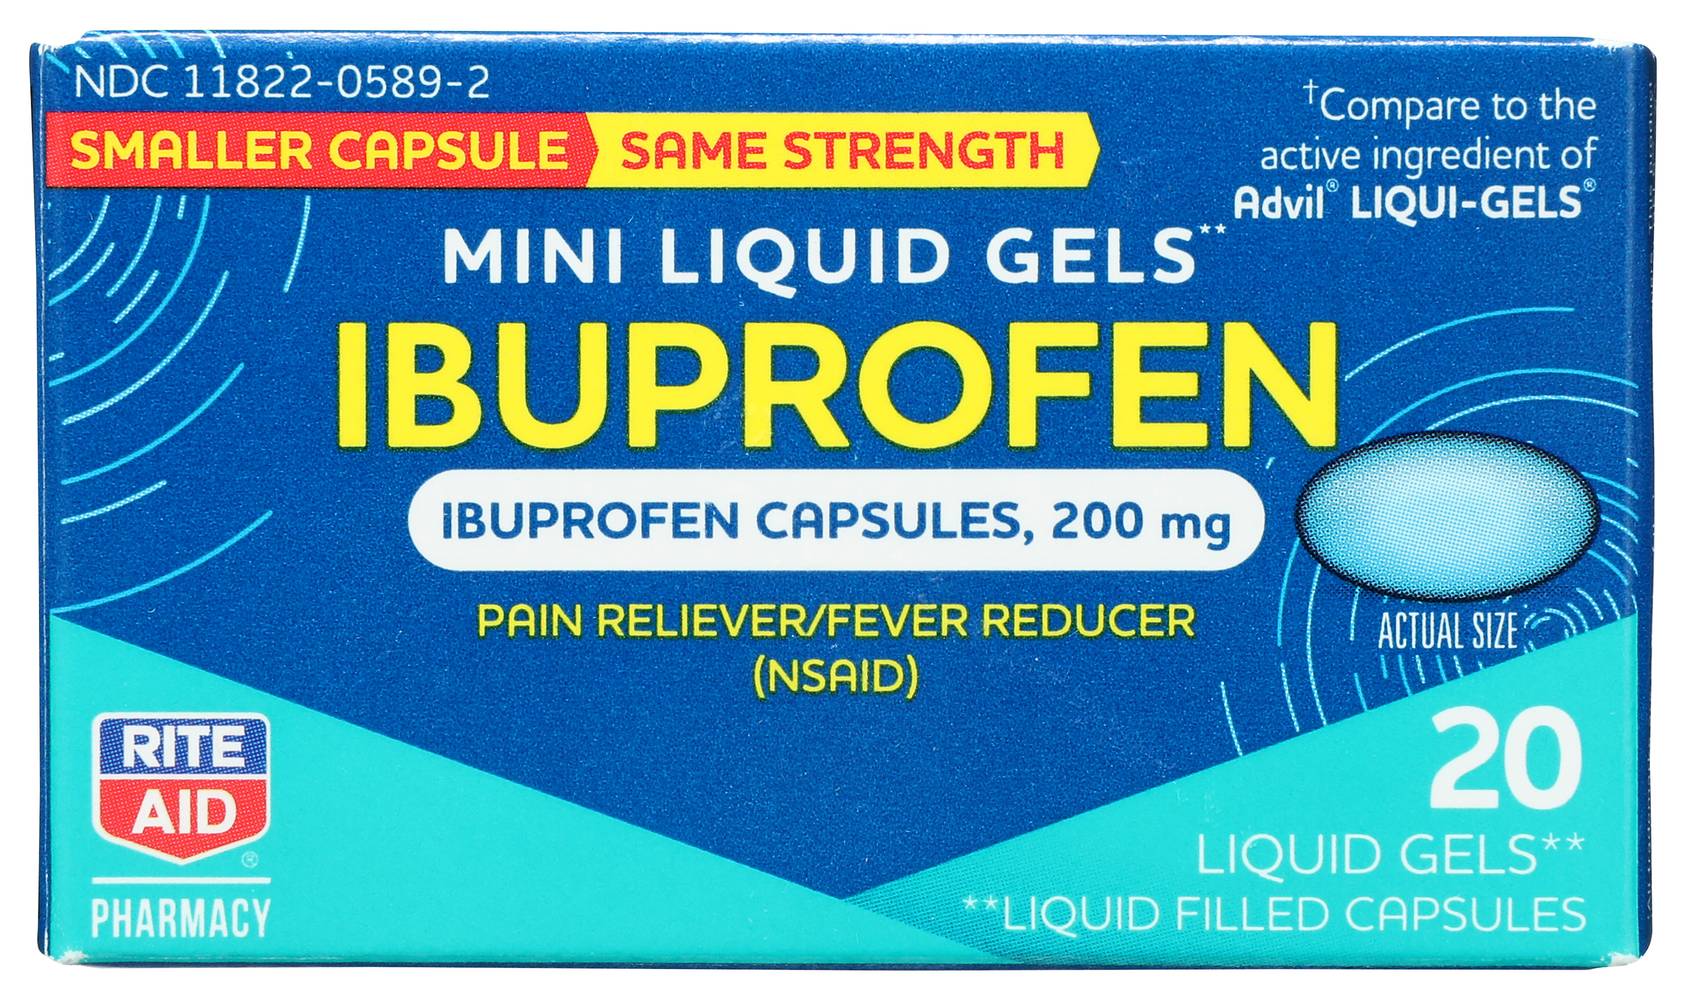 Rite Aid Ibuprofen Softgel Capsule